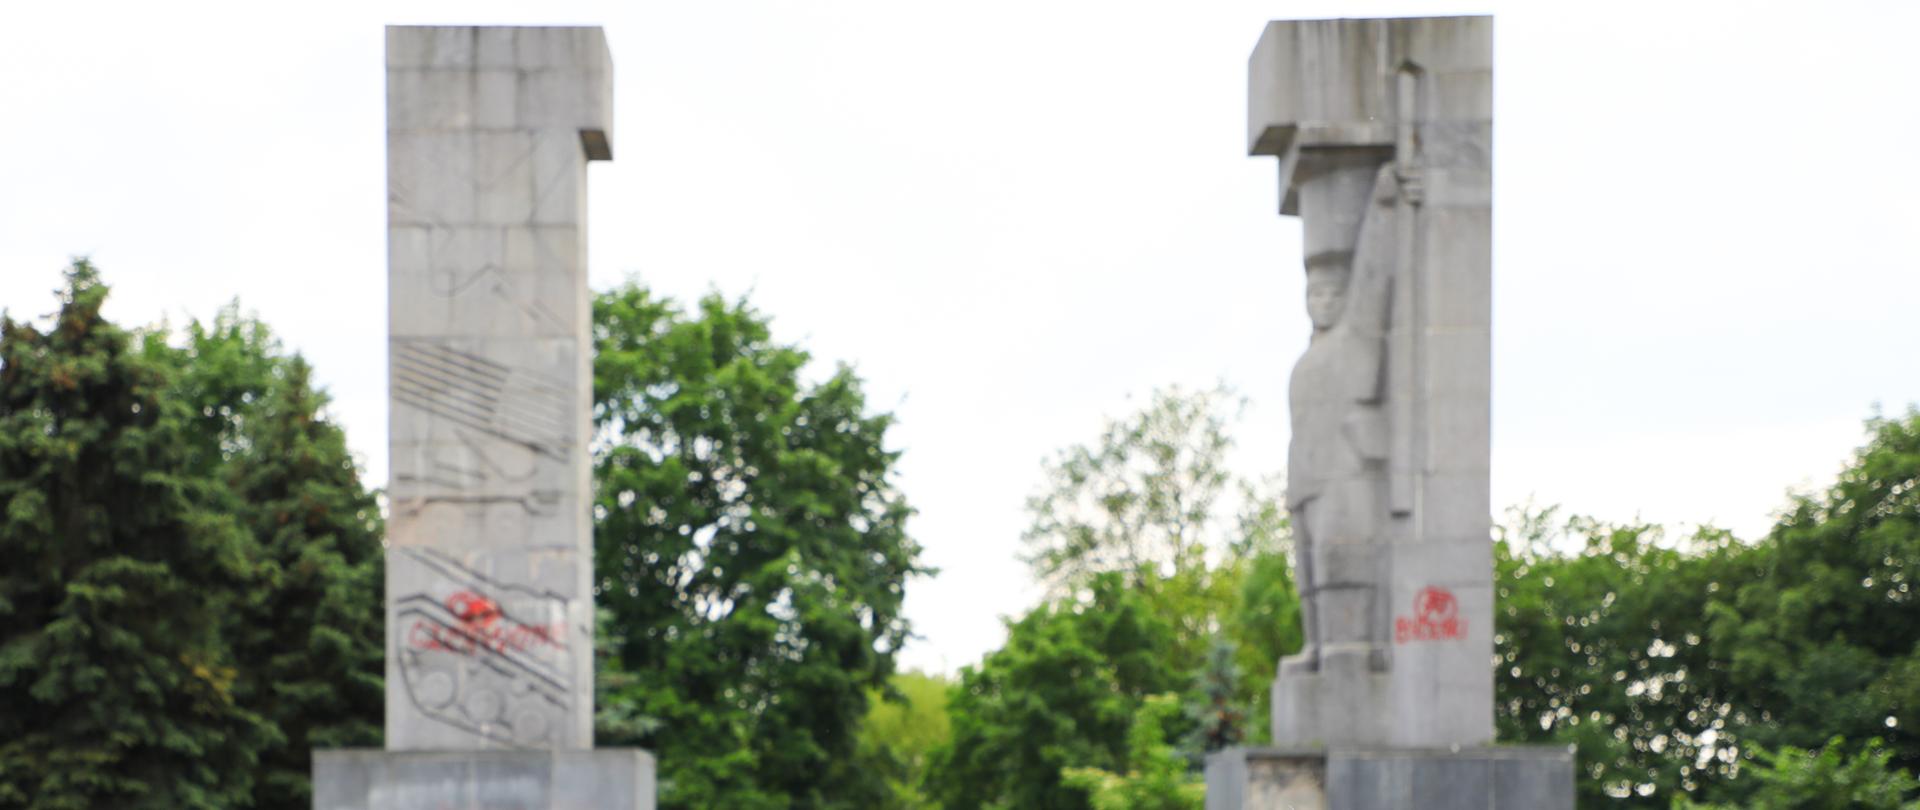 Sąd utrzymał w mocy decyzję MKiDN w sprawie usunięcia pomnika Wyzwolenia Ziemi Warmińsko-Mazurskiej - tzw. szubienic w Olsztynie